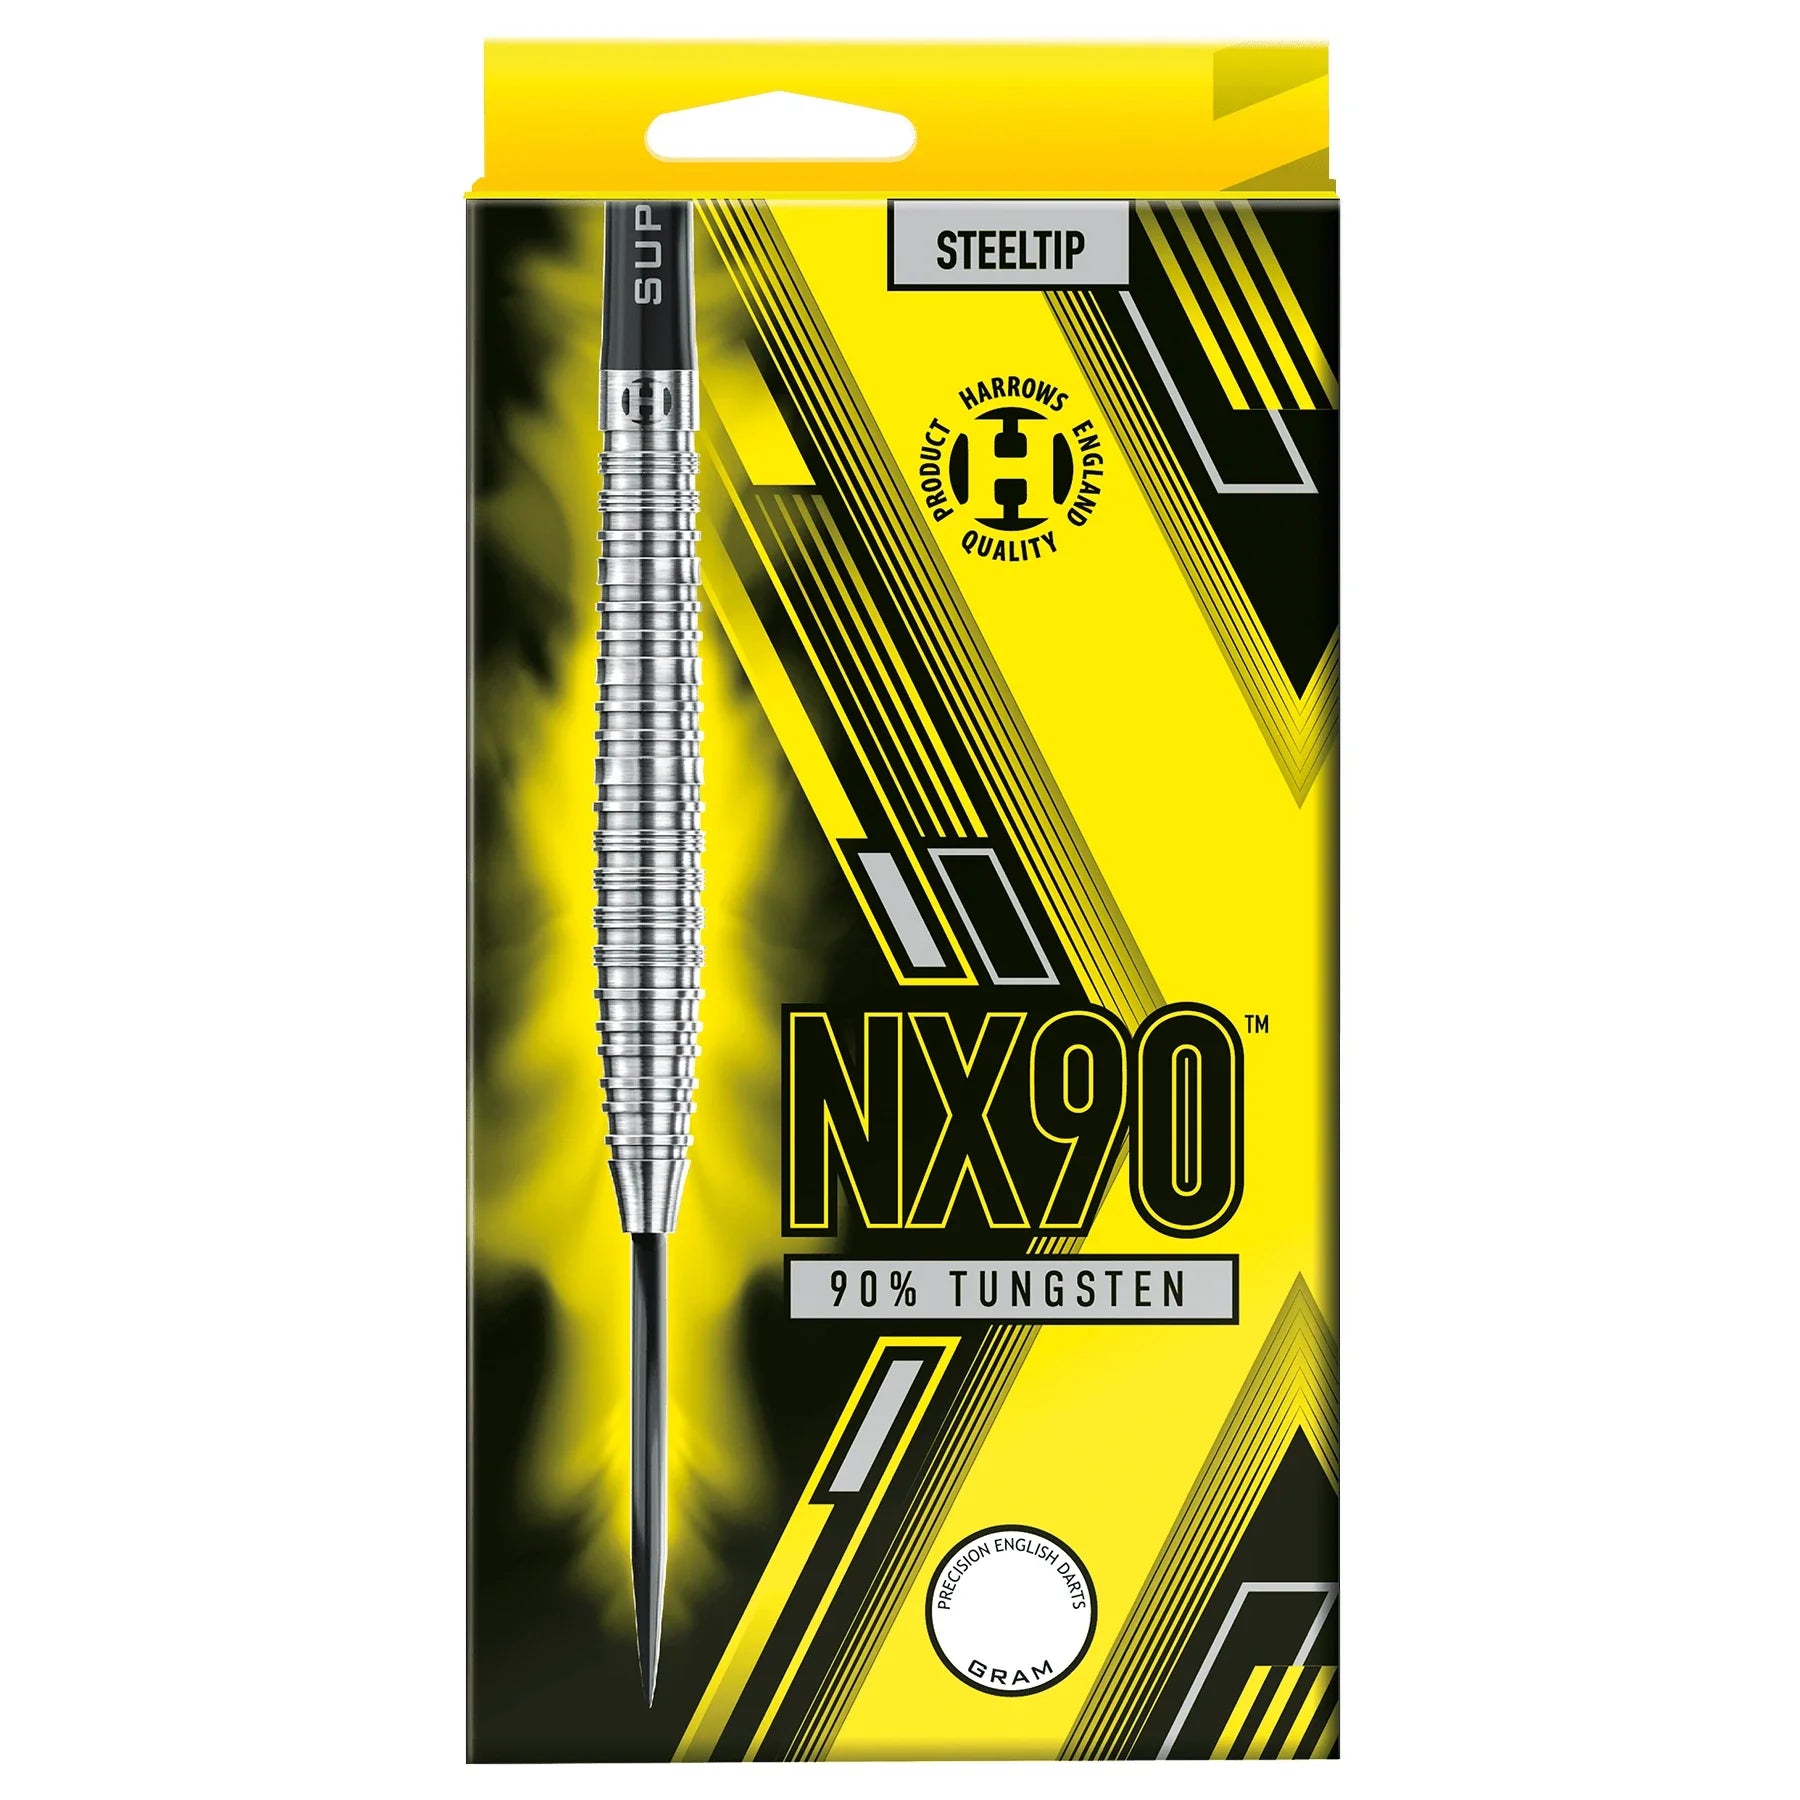 Harrows NX90 22g Darts